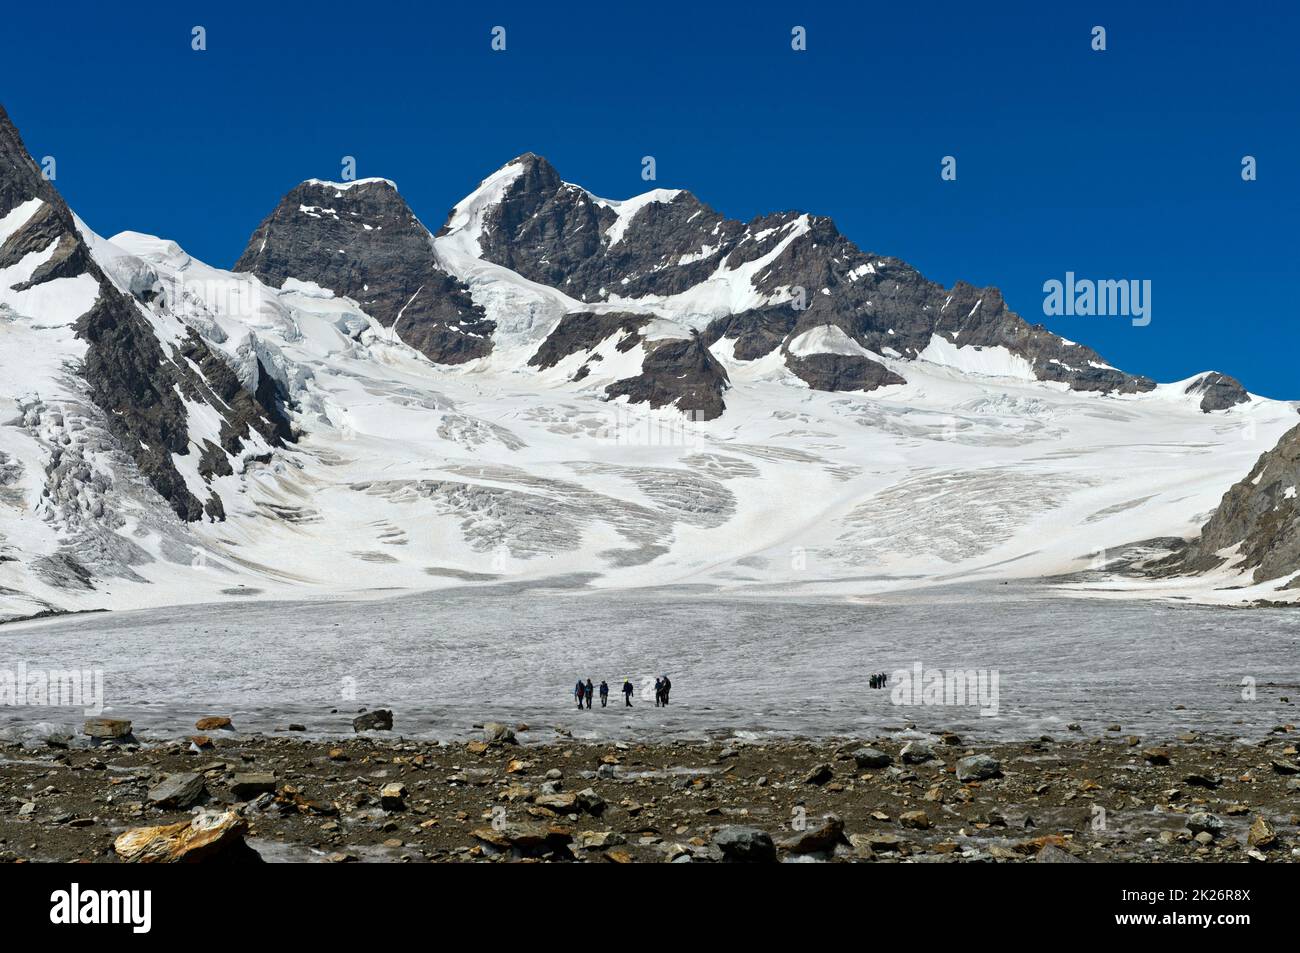 Un groupe d'alpinistes sur le champ de glace de la Jungfraufirn, le sommet de la Jungfrau derrière, les Alpes suisses Jungfrau-Aletsch, classées au patrimoine mondial de l'UNESCO, Grindelwal Banque D'Images